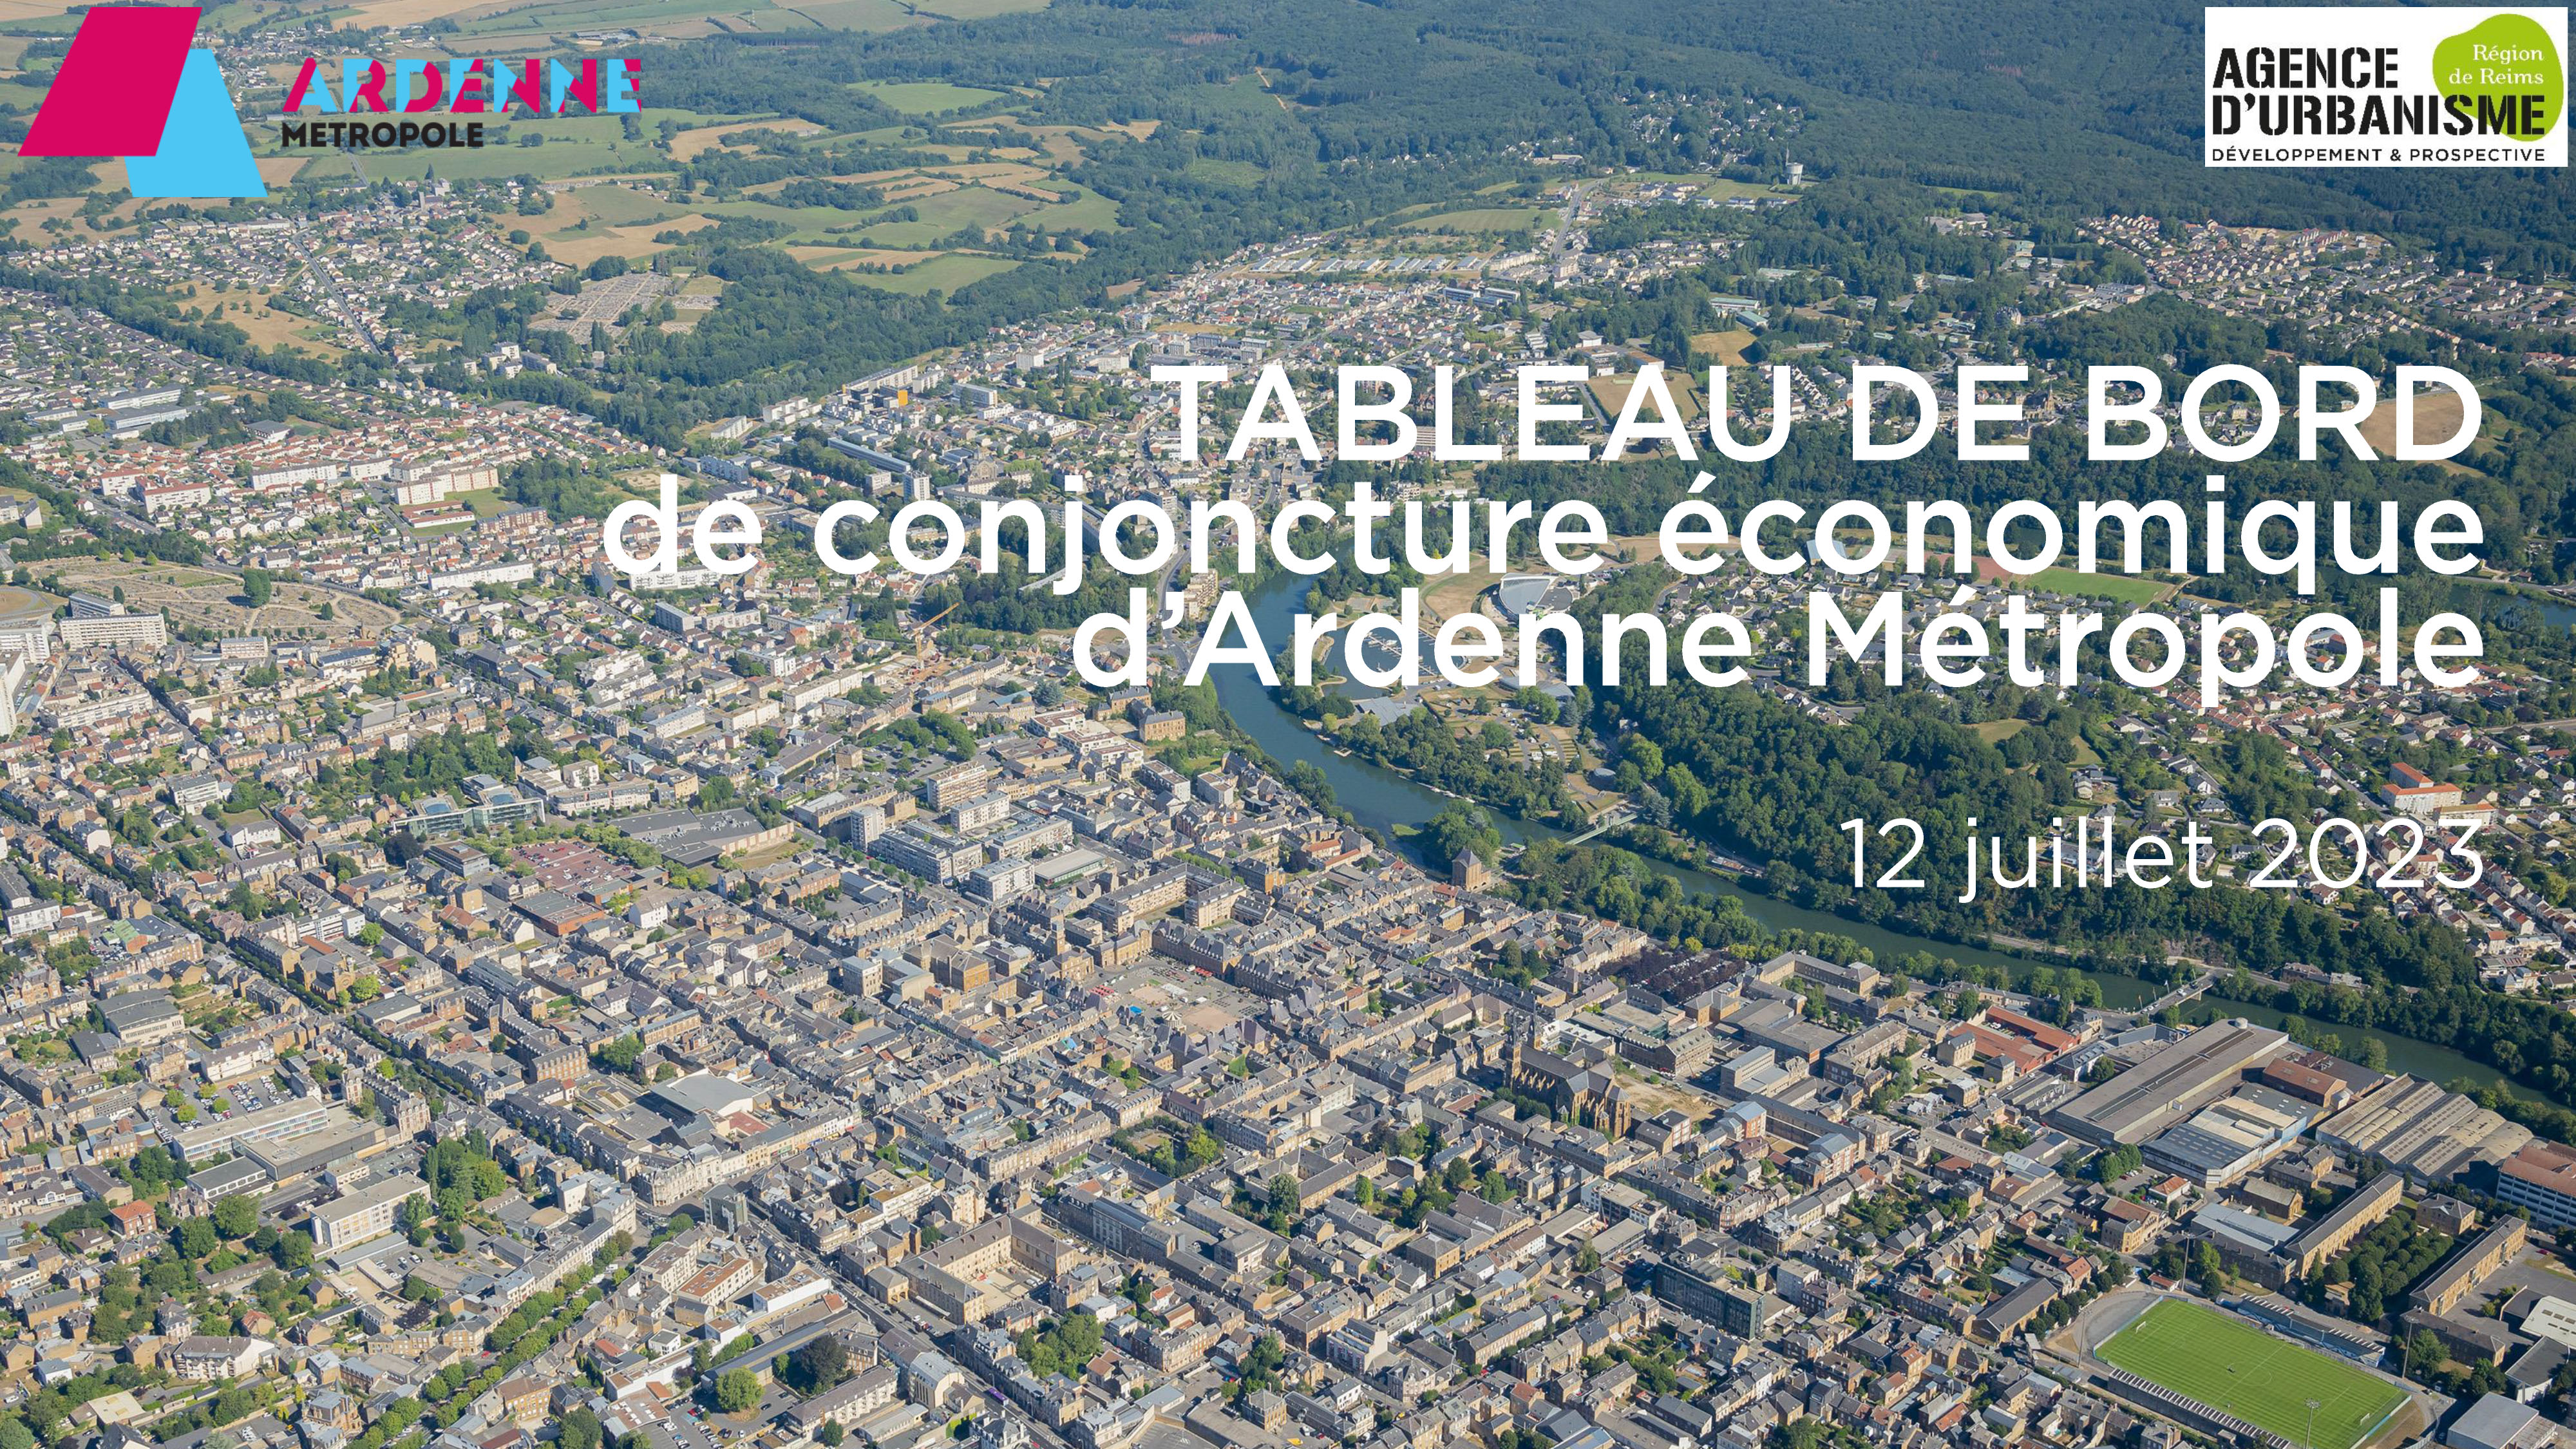 Tableau de bord Ardenne Métropole / Conjoncture économique / 13-07-23